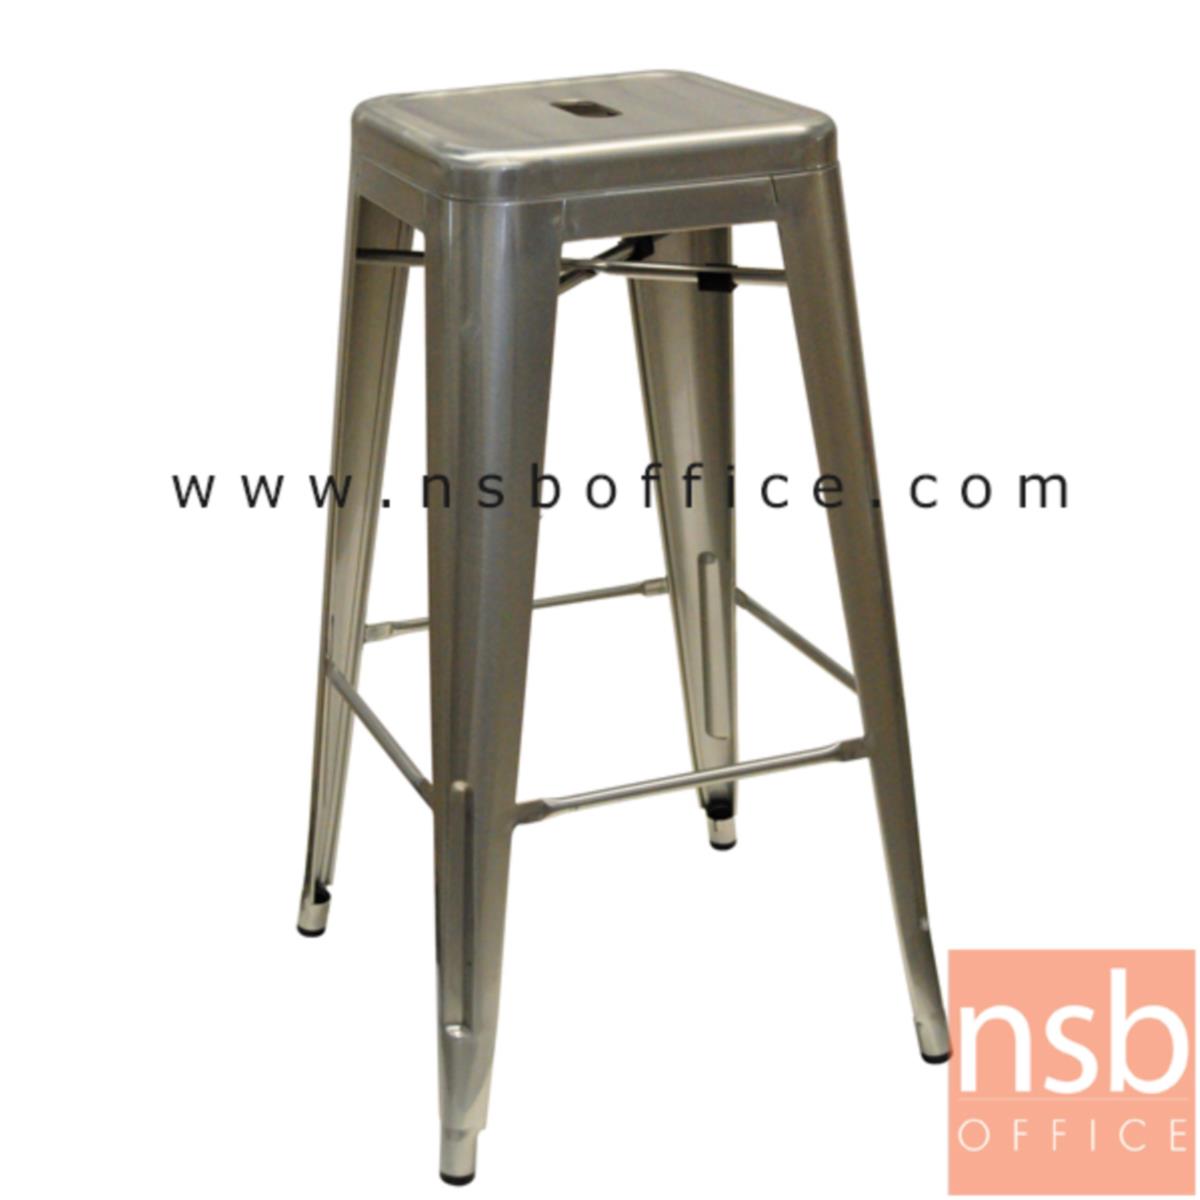 B09A178:เก้าอี้บาร์สูงเหล็ก รุ่น Sandler (แซนด์เลอร์) ขนาด 30W cm. โครงเหล็กสีเทาขัดลาย